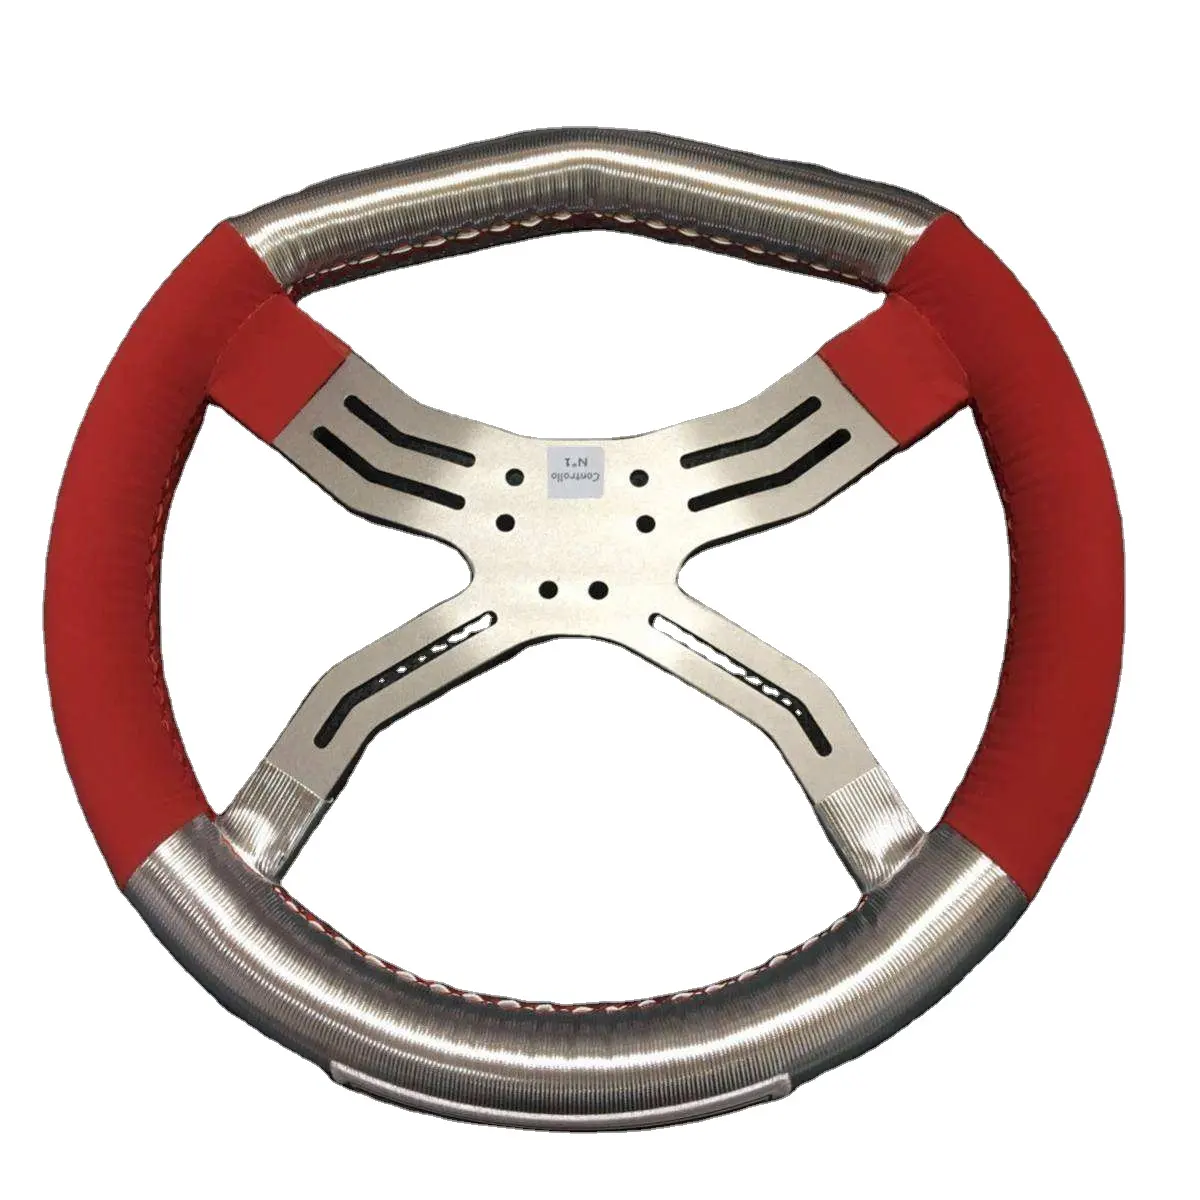 Beste racing stuurwiel go kart onderdelen, onderdelen voor racing karting met staal materiaal